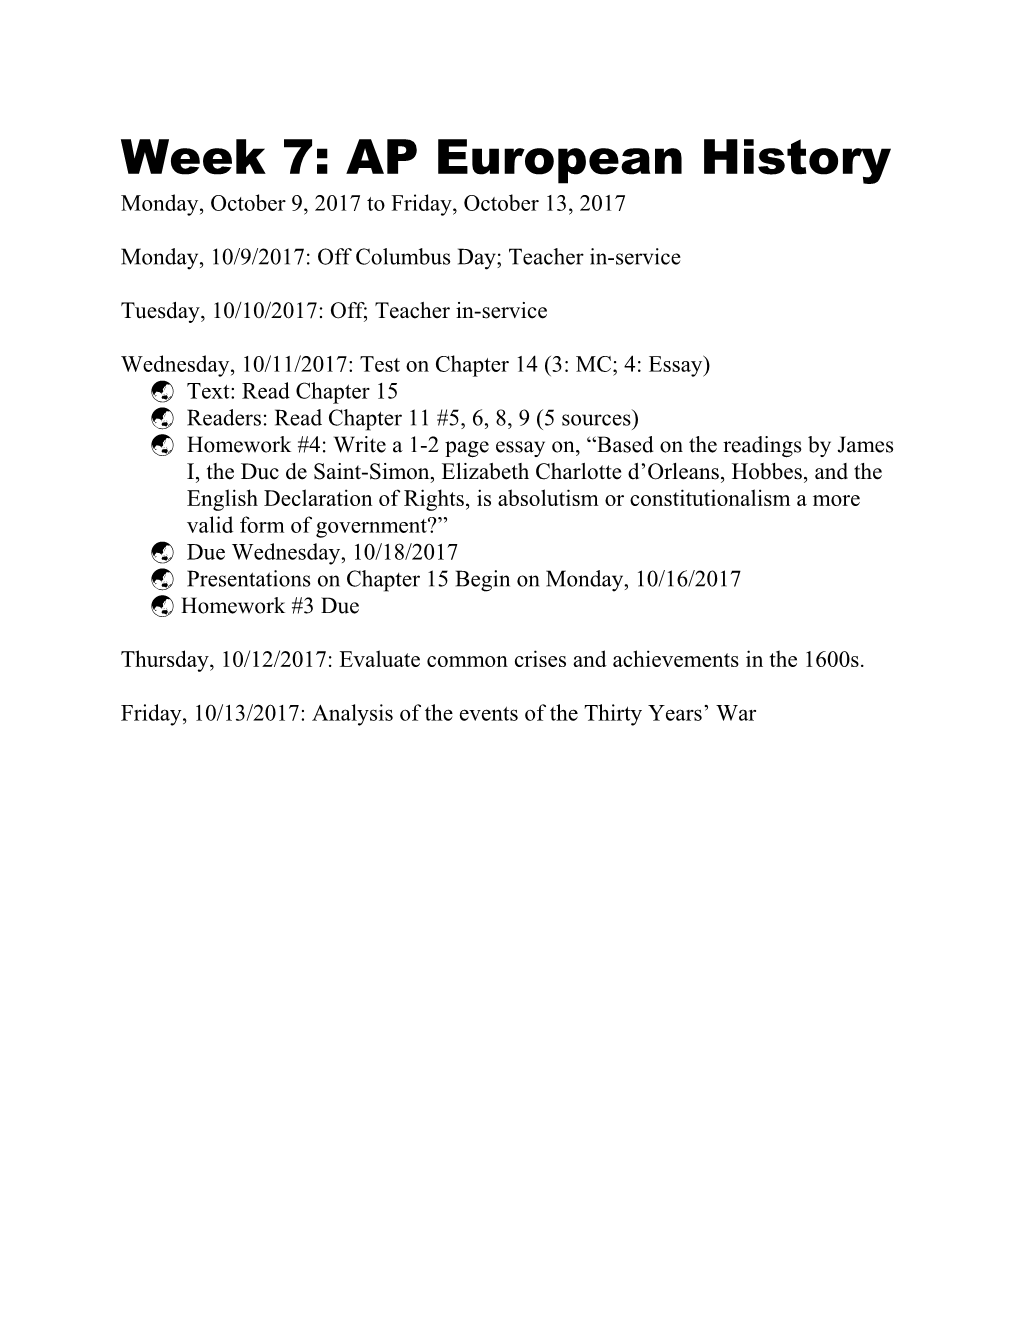 Week 7: American Studies GP